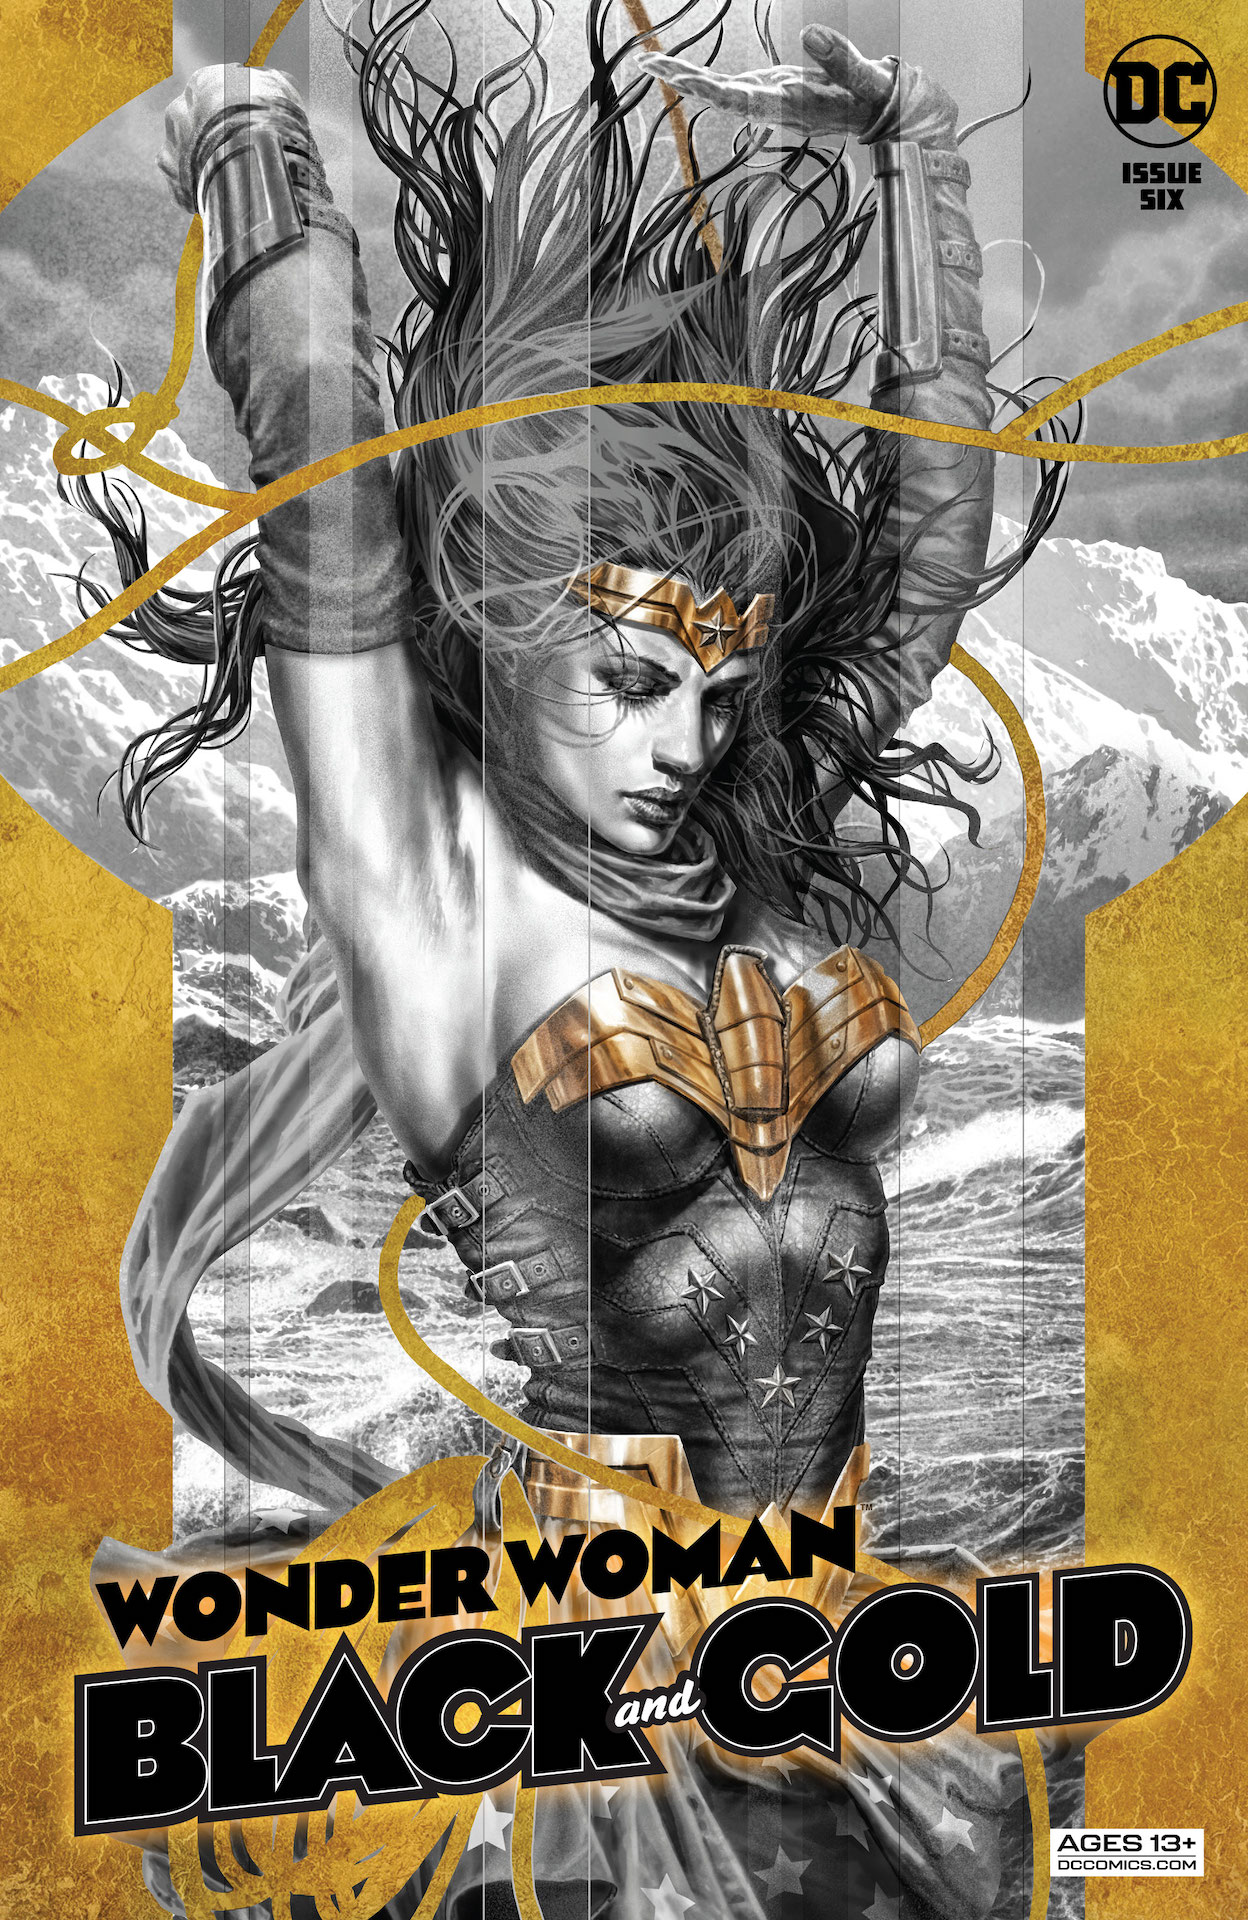 DC Preview: Wonder Woman Black & Gold #6